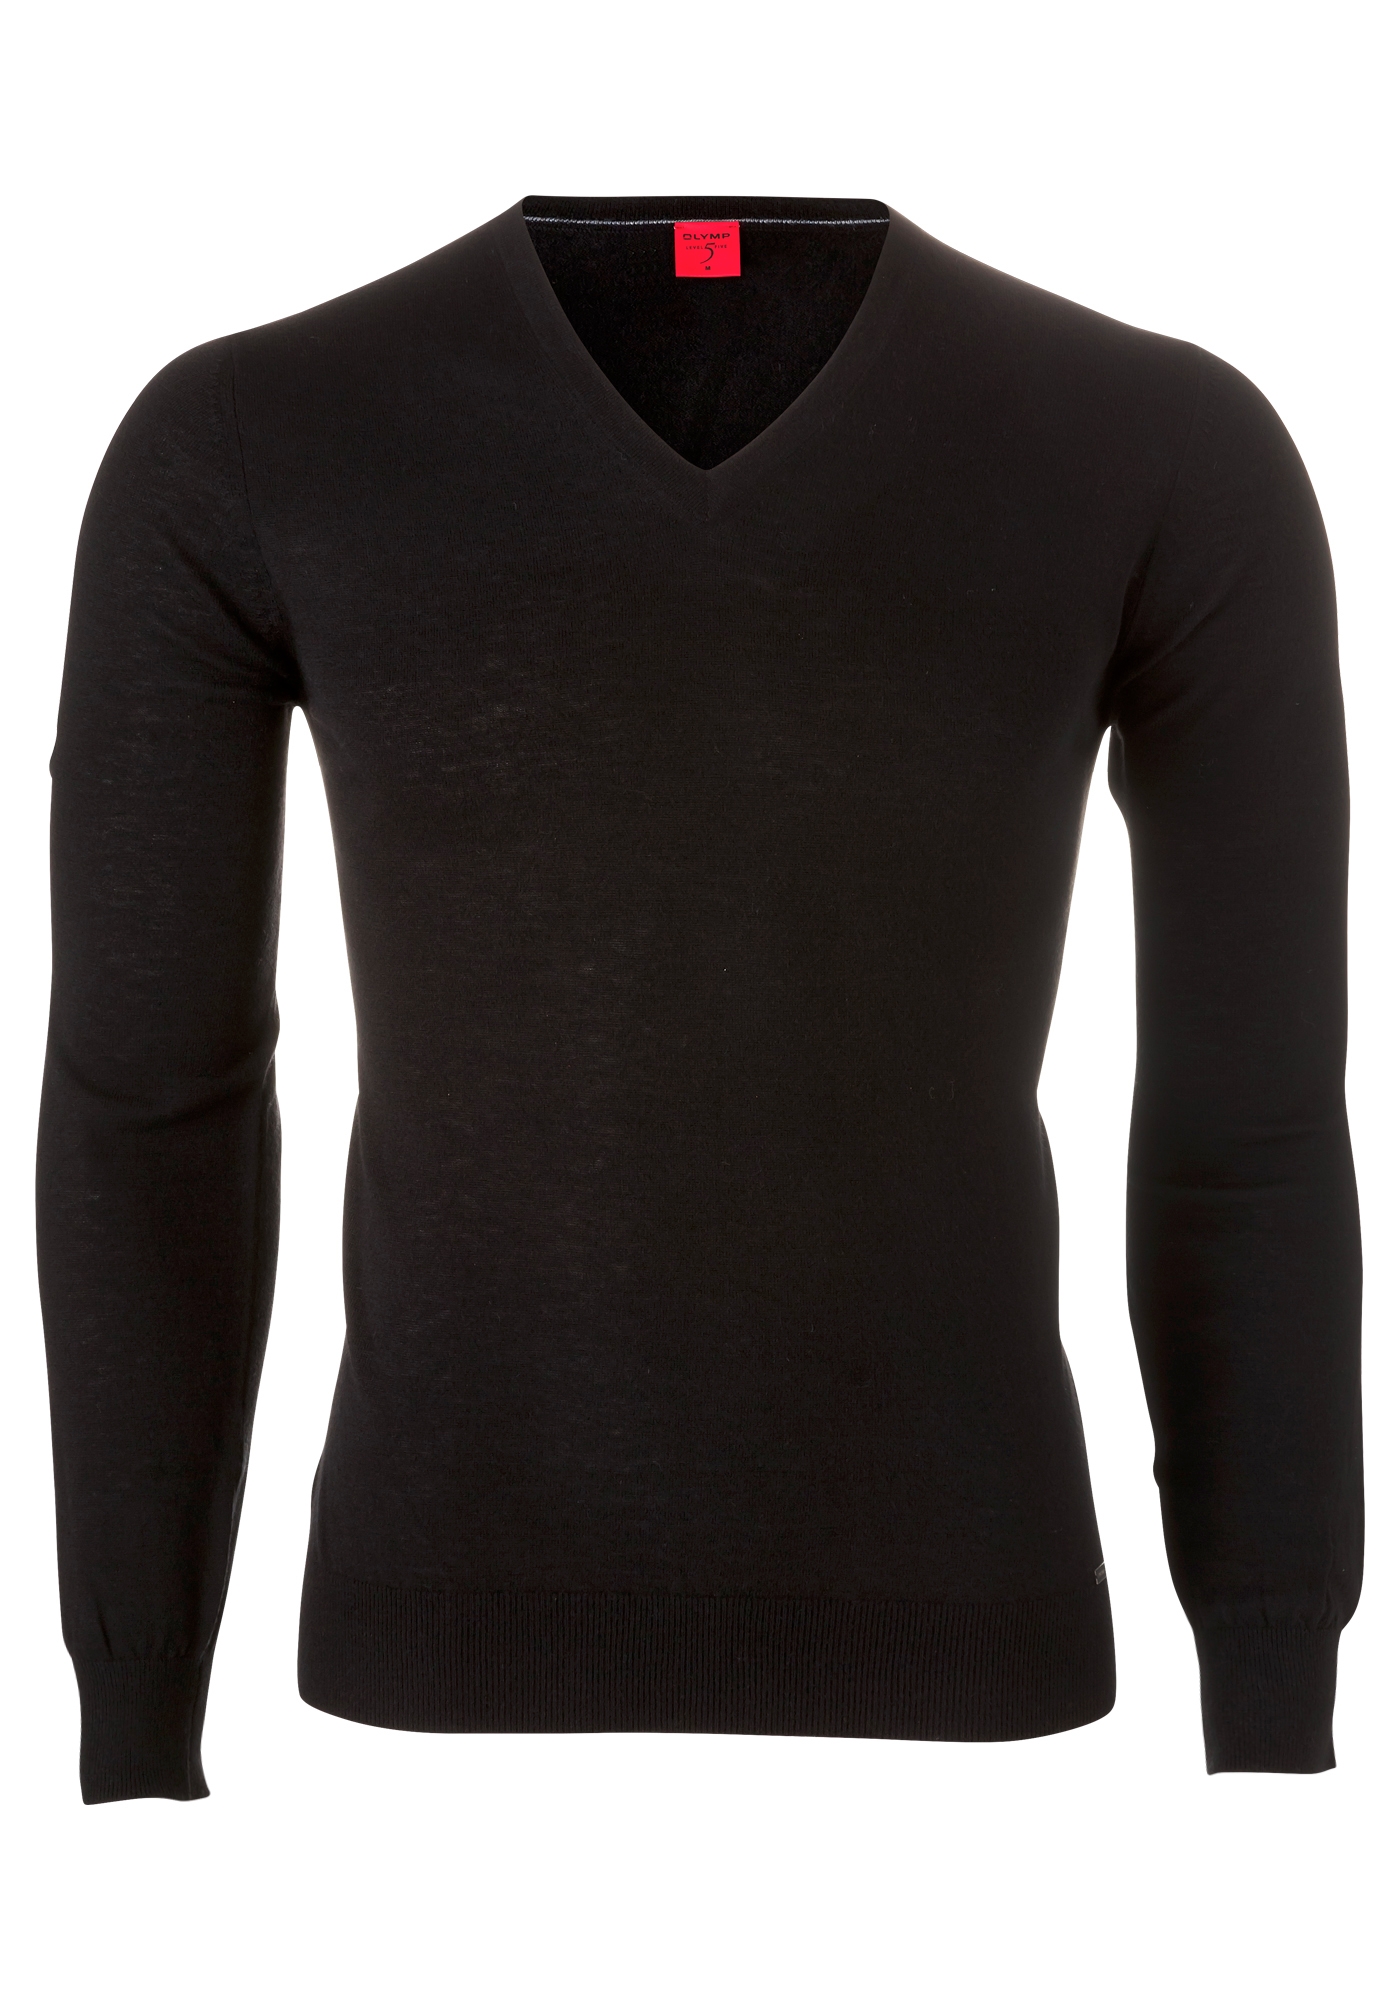 OLYMP Level 5 body fit trui wol met zijde, V-hals, zwart